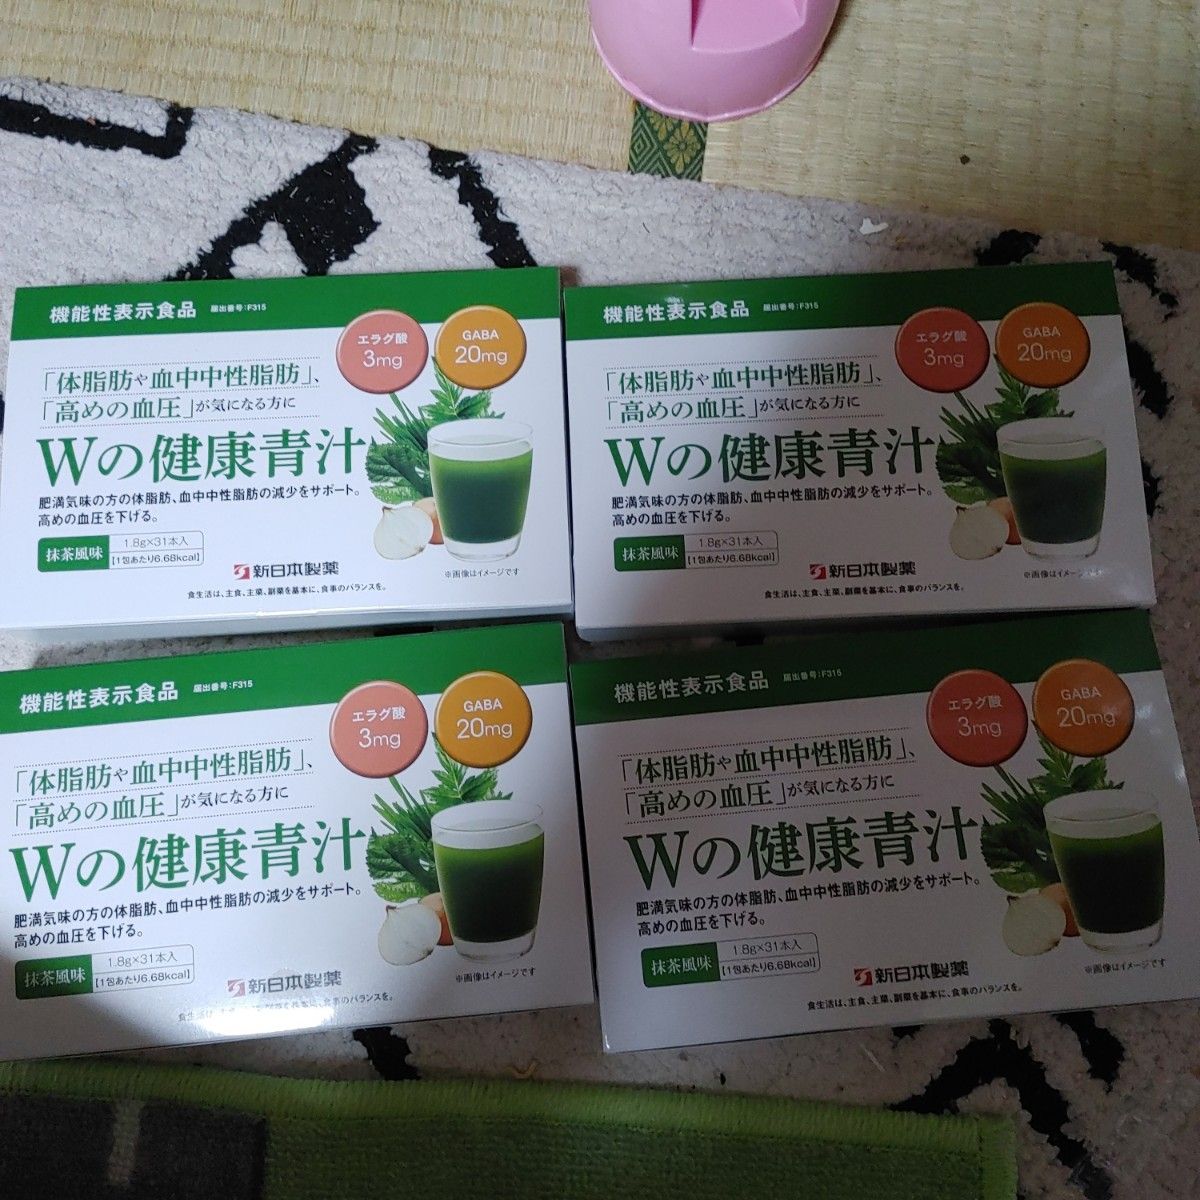 全品送料無料 新日本製薬 生活習慣サポート Wの健康青汁 3箱セット